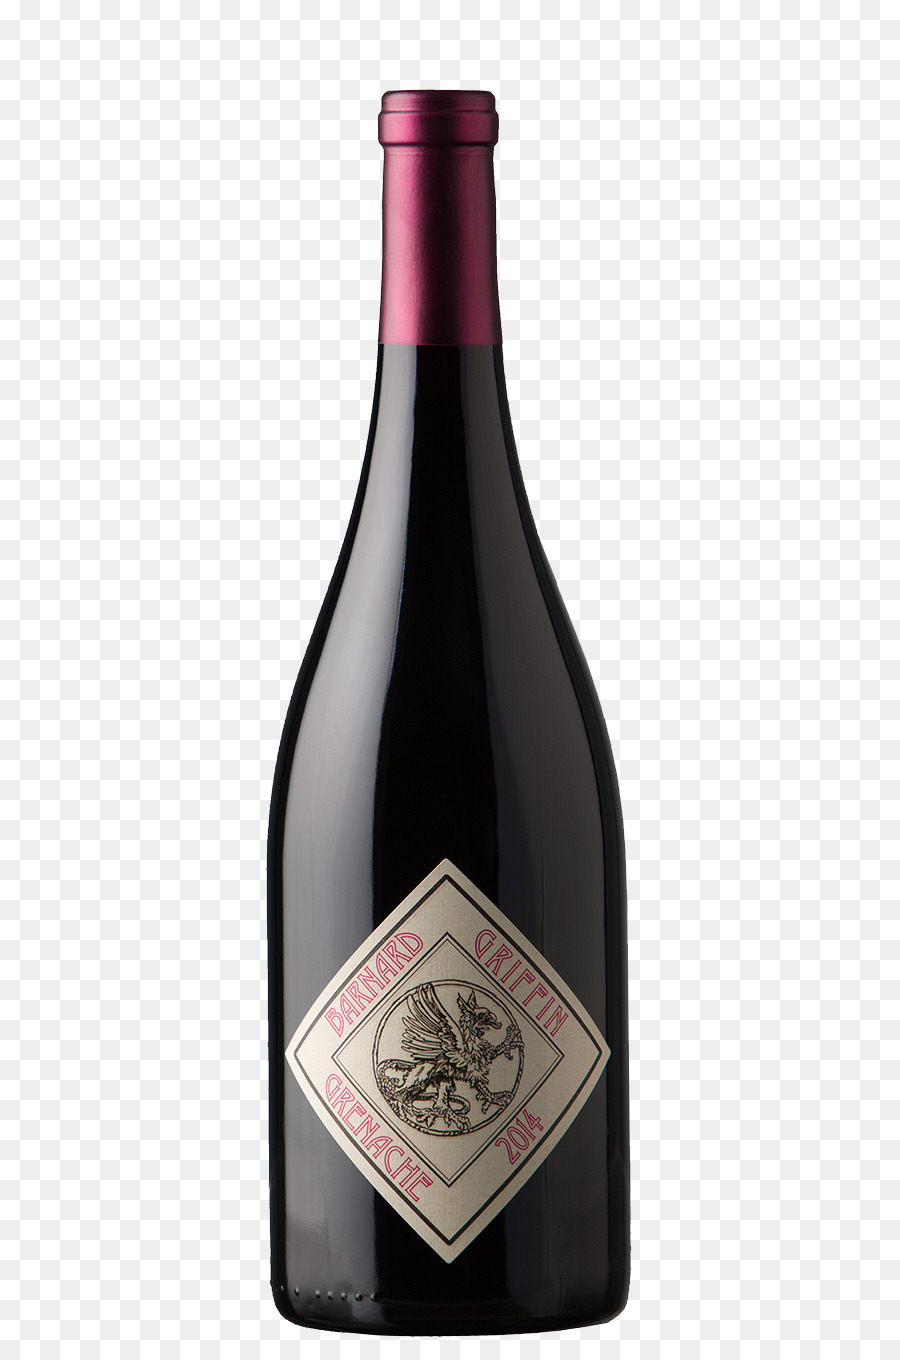 Champagne Montagna Rossa, Vino Rosso Merlot - Champagne